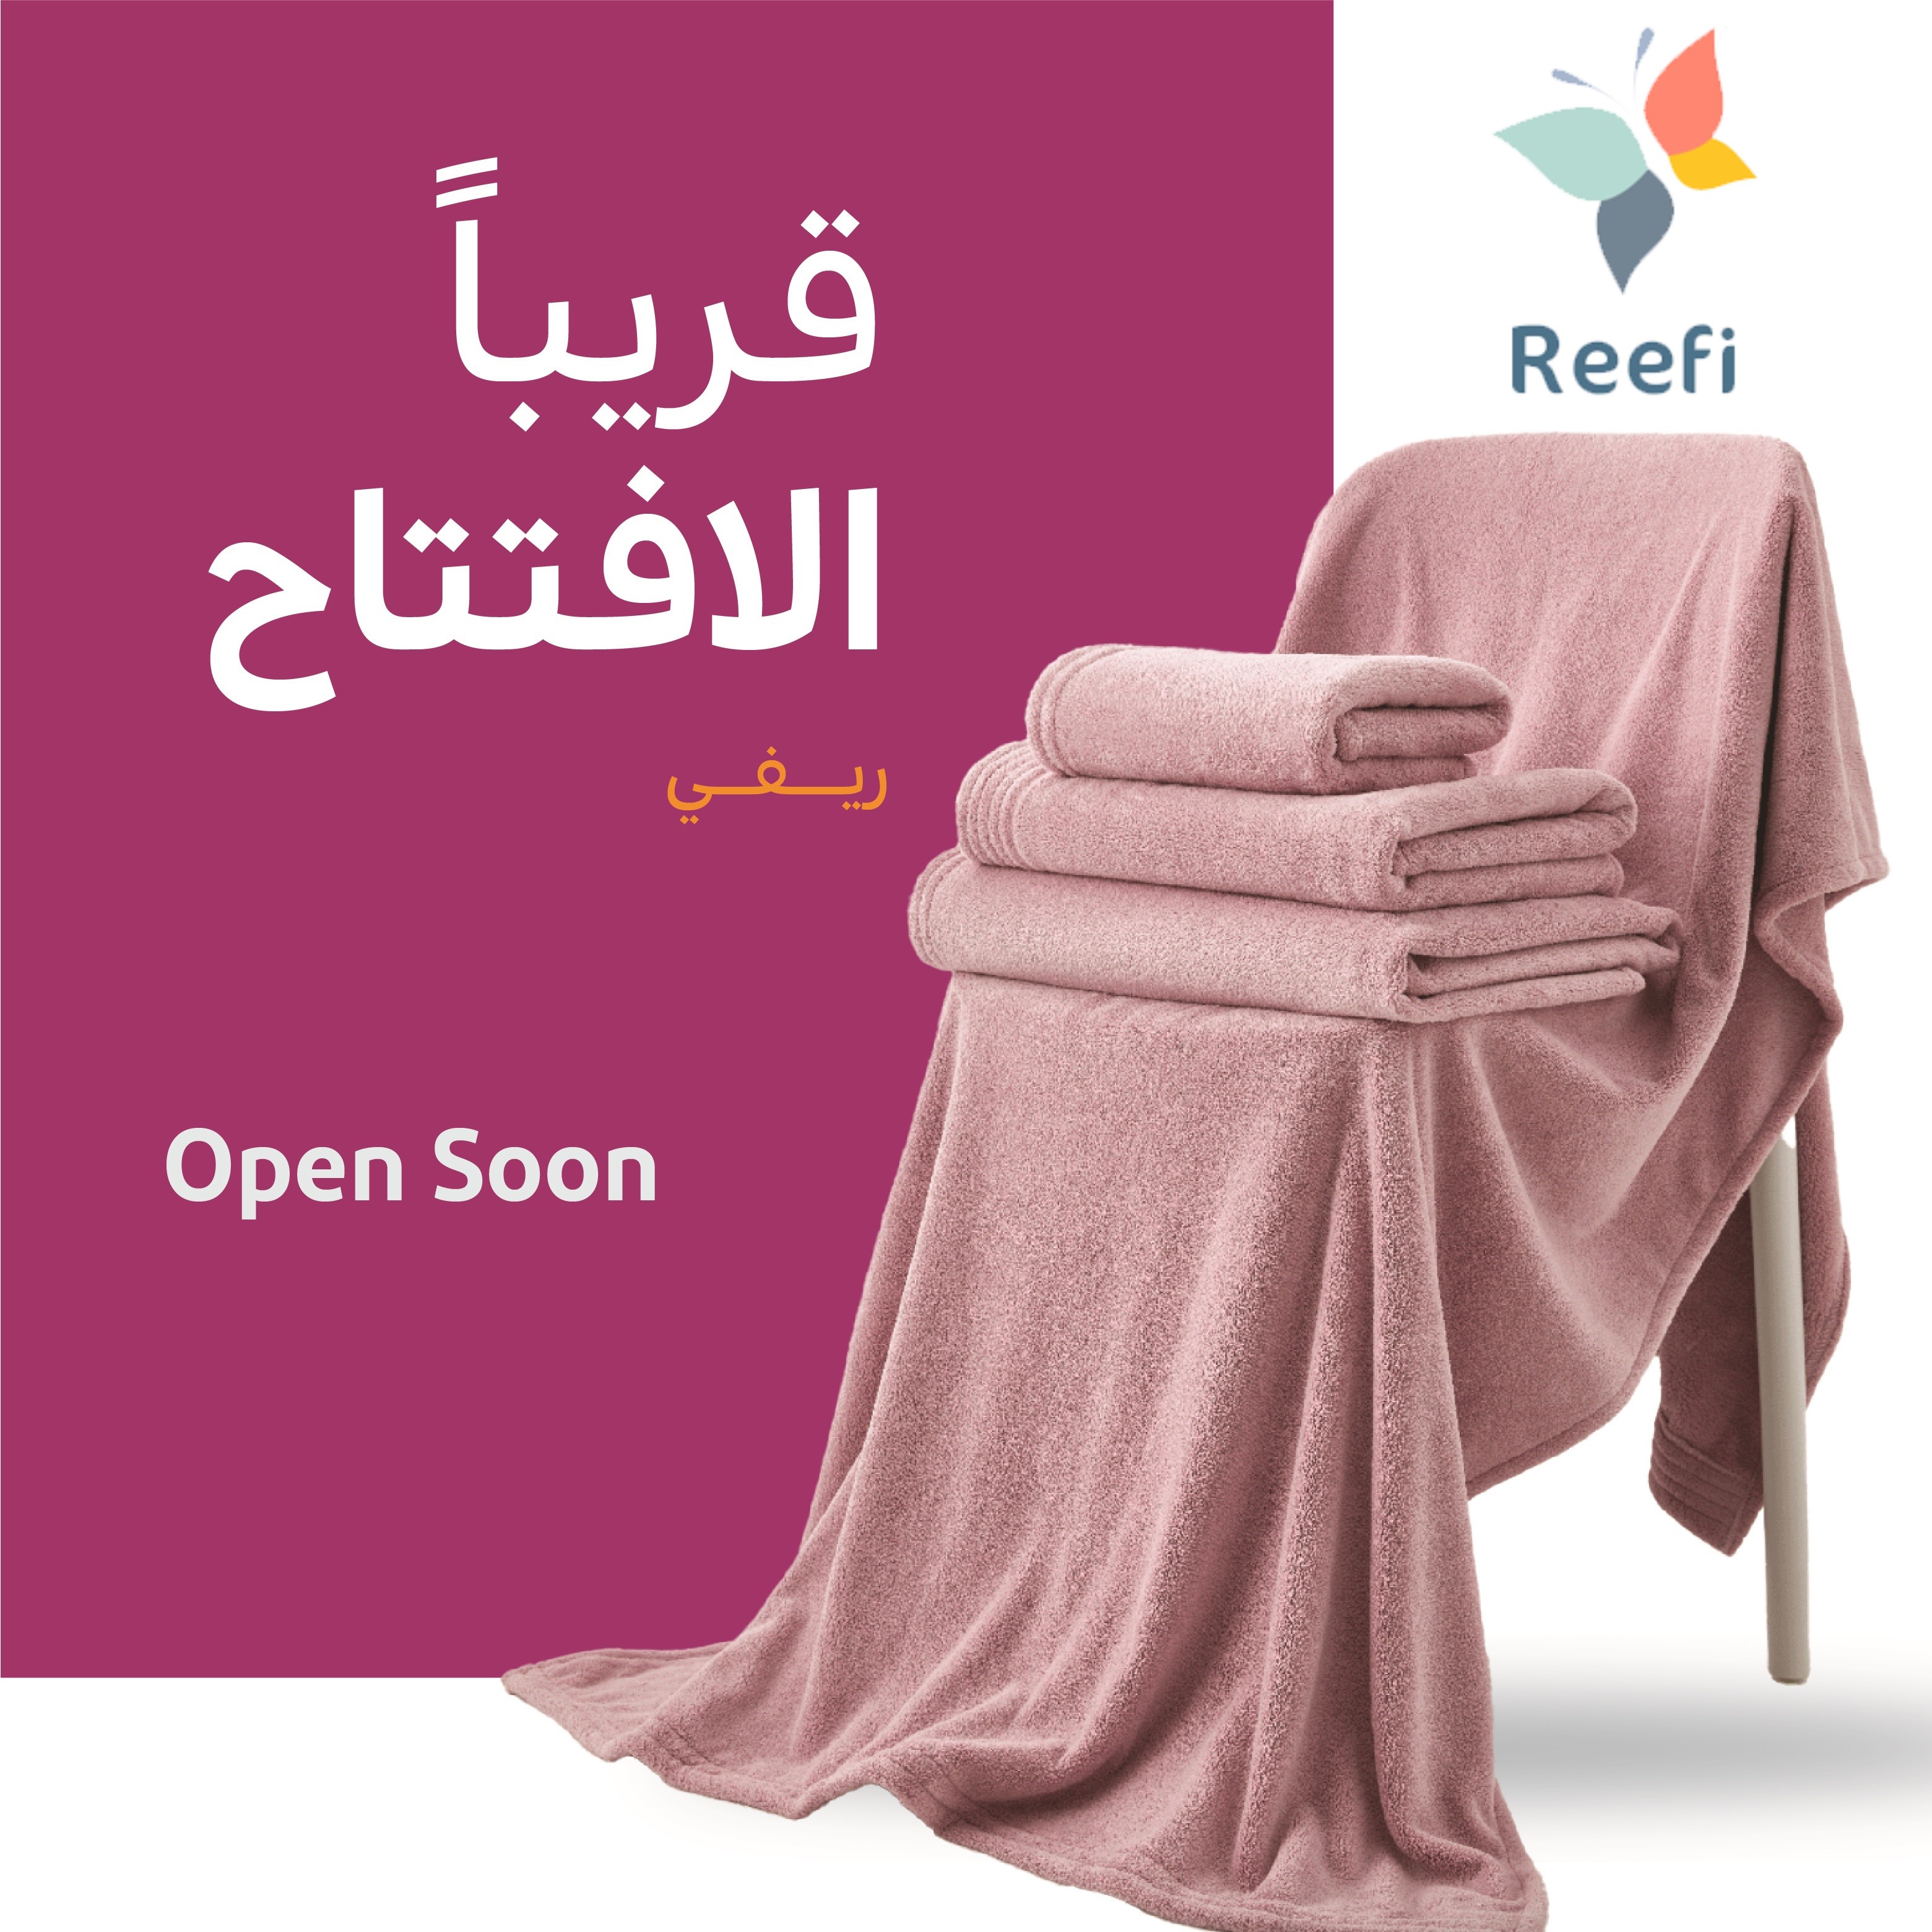 Reefi Open Soon